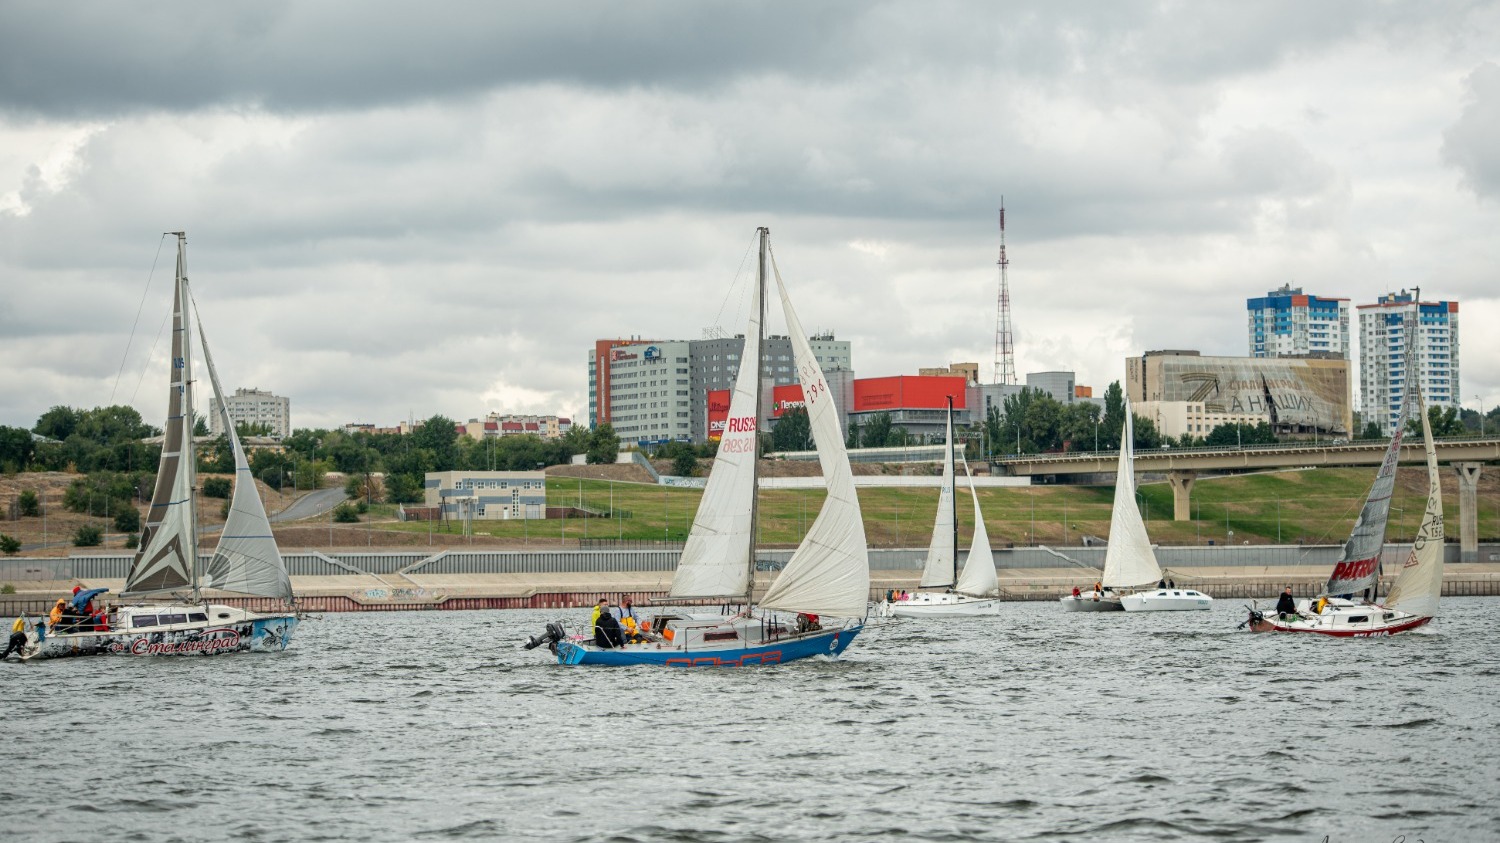 Виды Волгограда на фоне красивых яхт завораживают